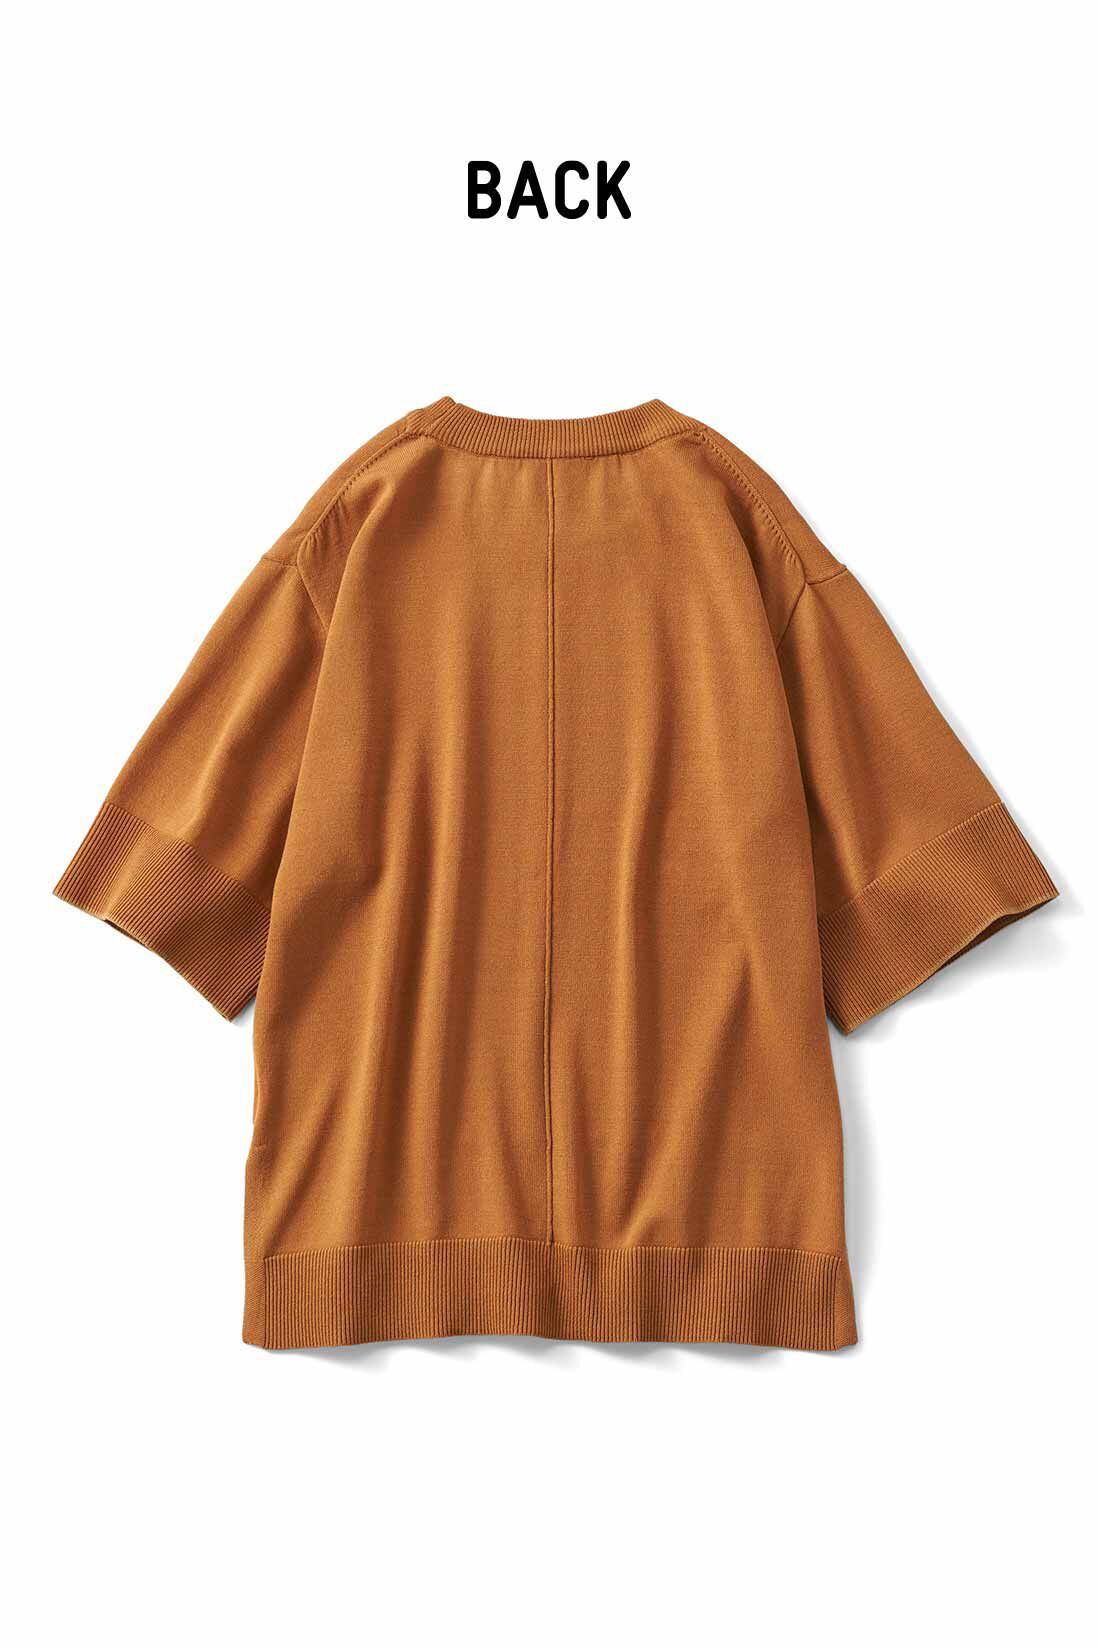 Real Stock|リブ イン コンフォート　Tシャツ感覚で着れちゃう きれいめニットトップス〈アイボリー〉|これは参考画像です。お届けするカラーとは異なります。